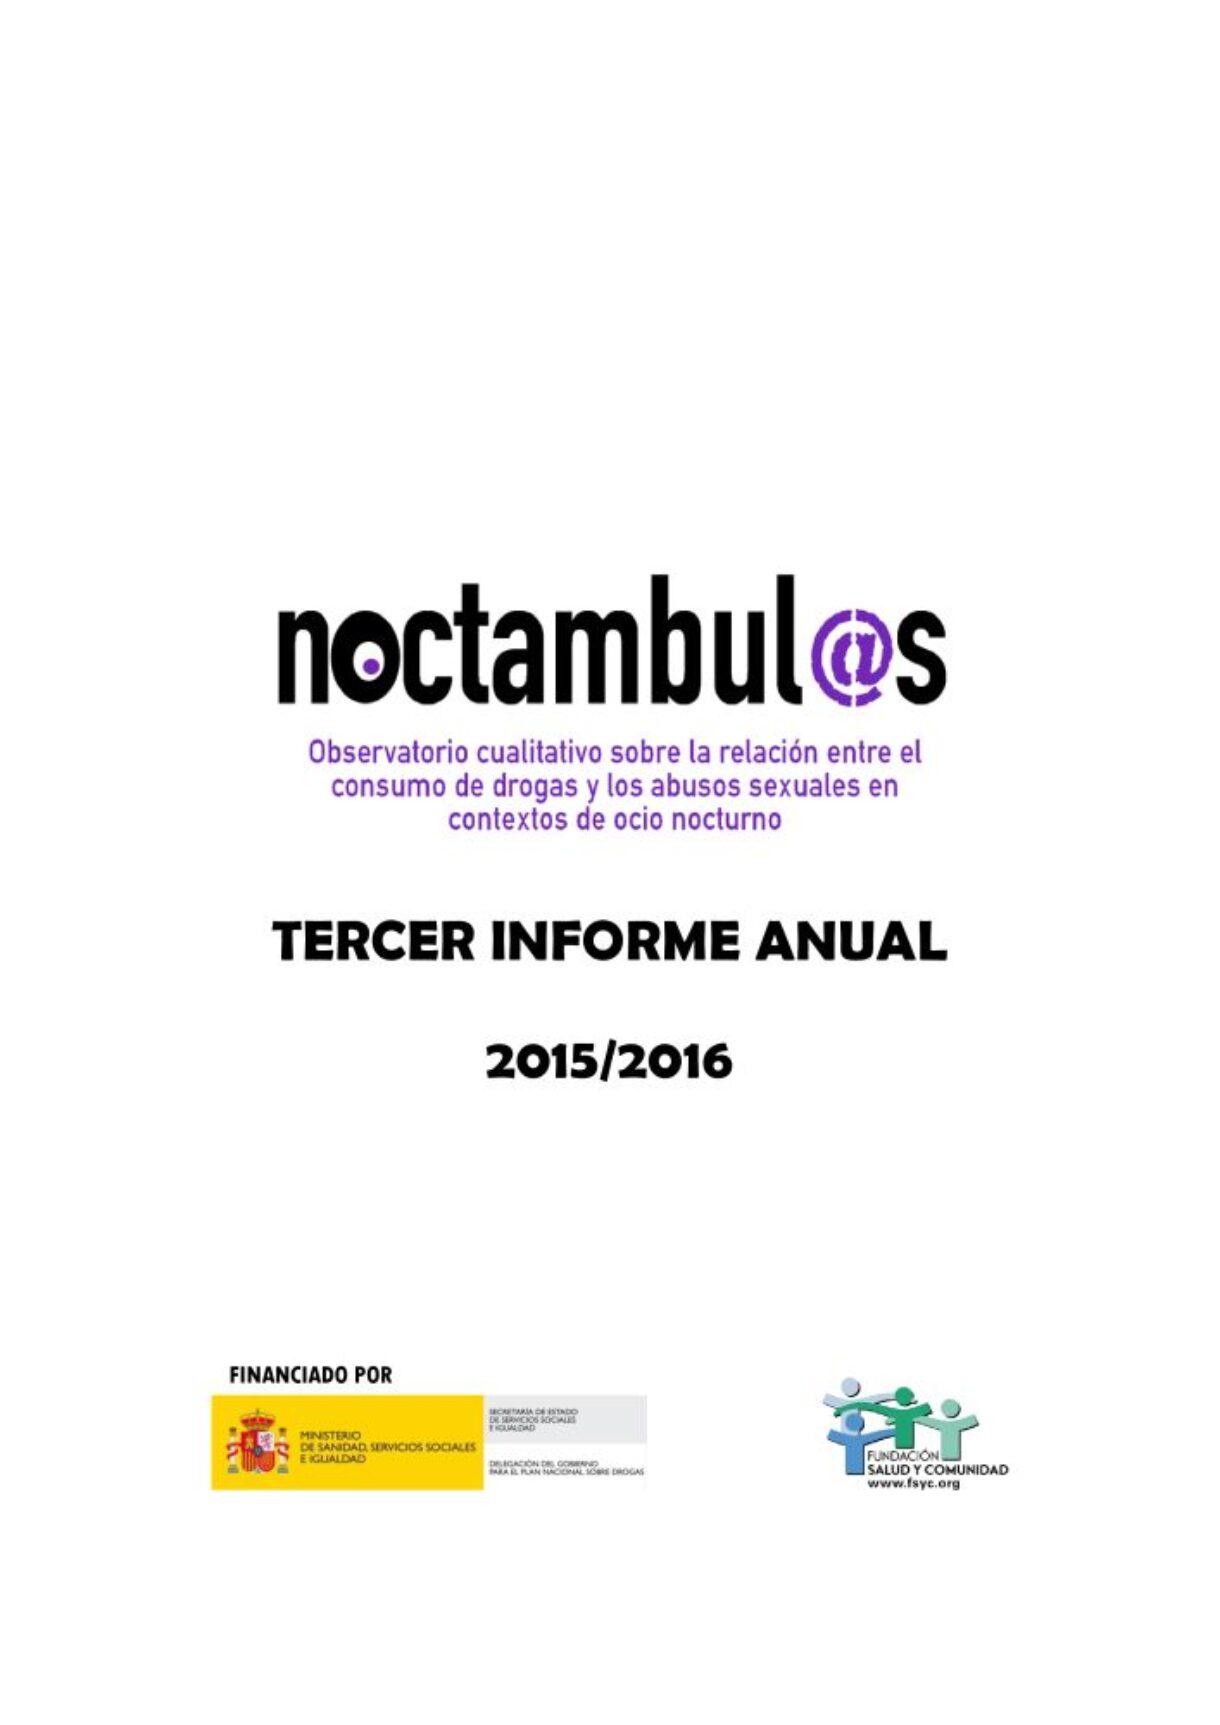 3r Informe Noctámbul@s sobre la relación entre el consumo de drogas y las violencias sexuales en espacios de ocio nocturno